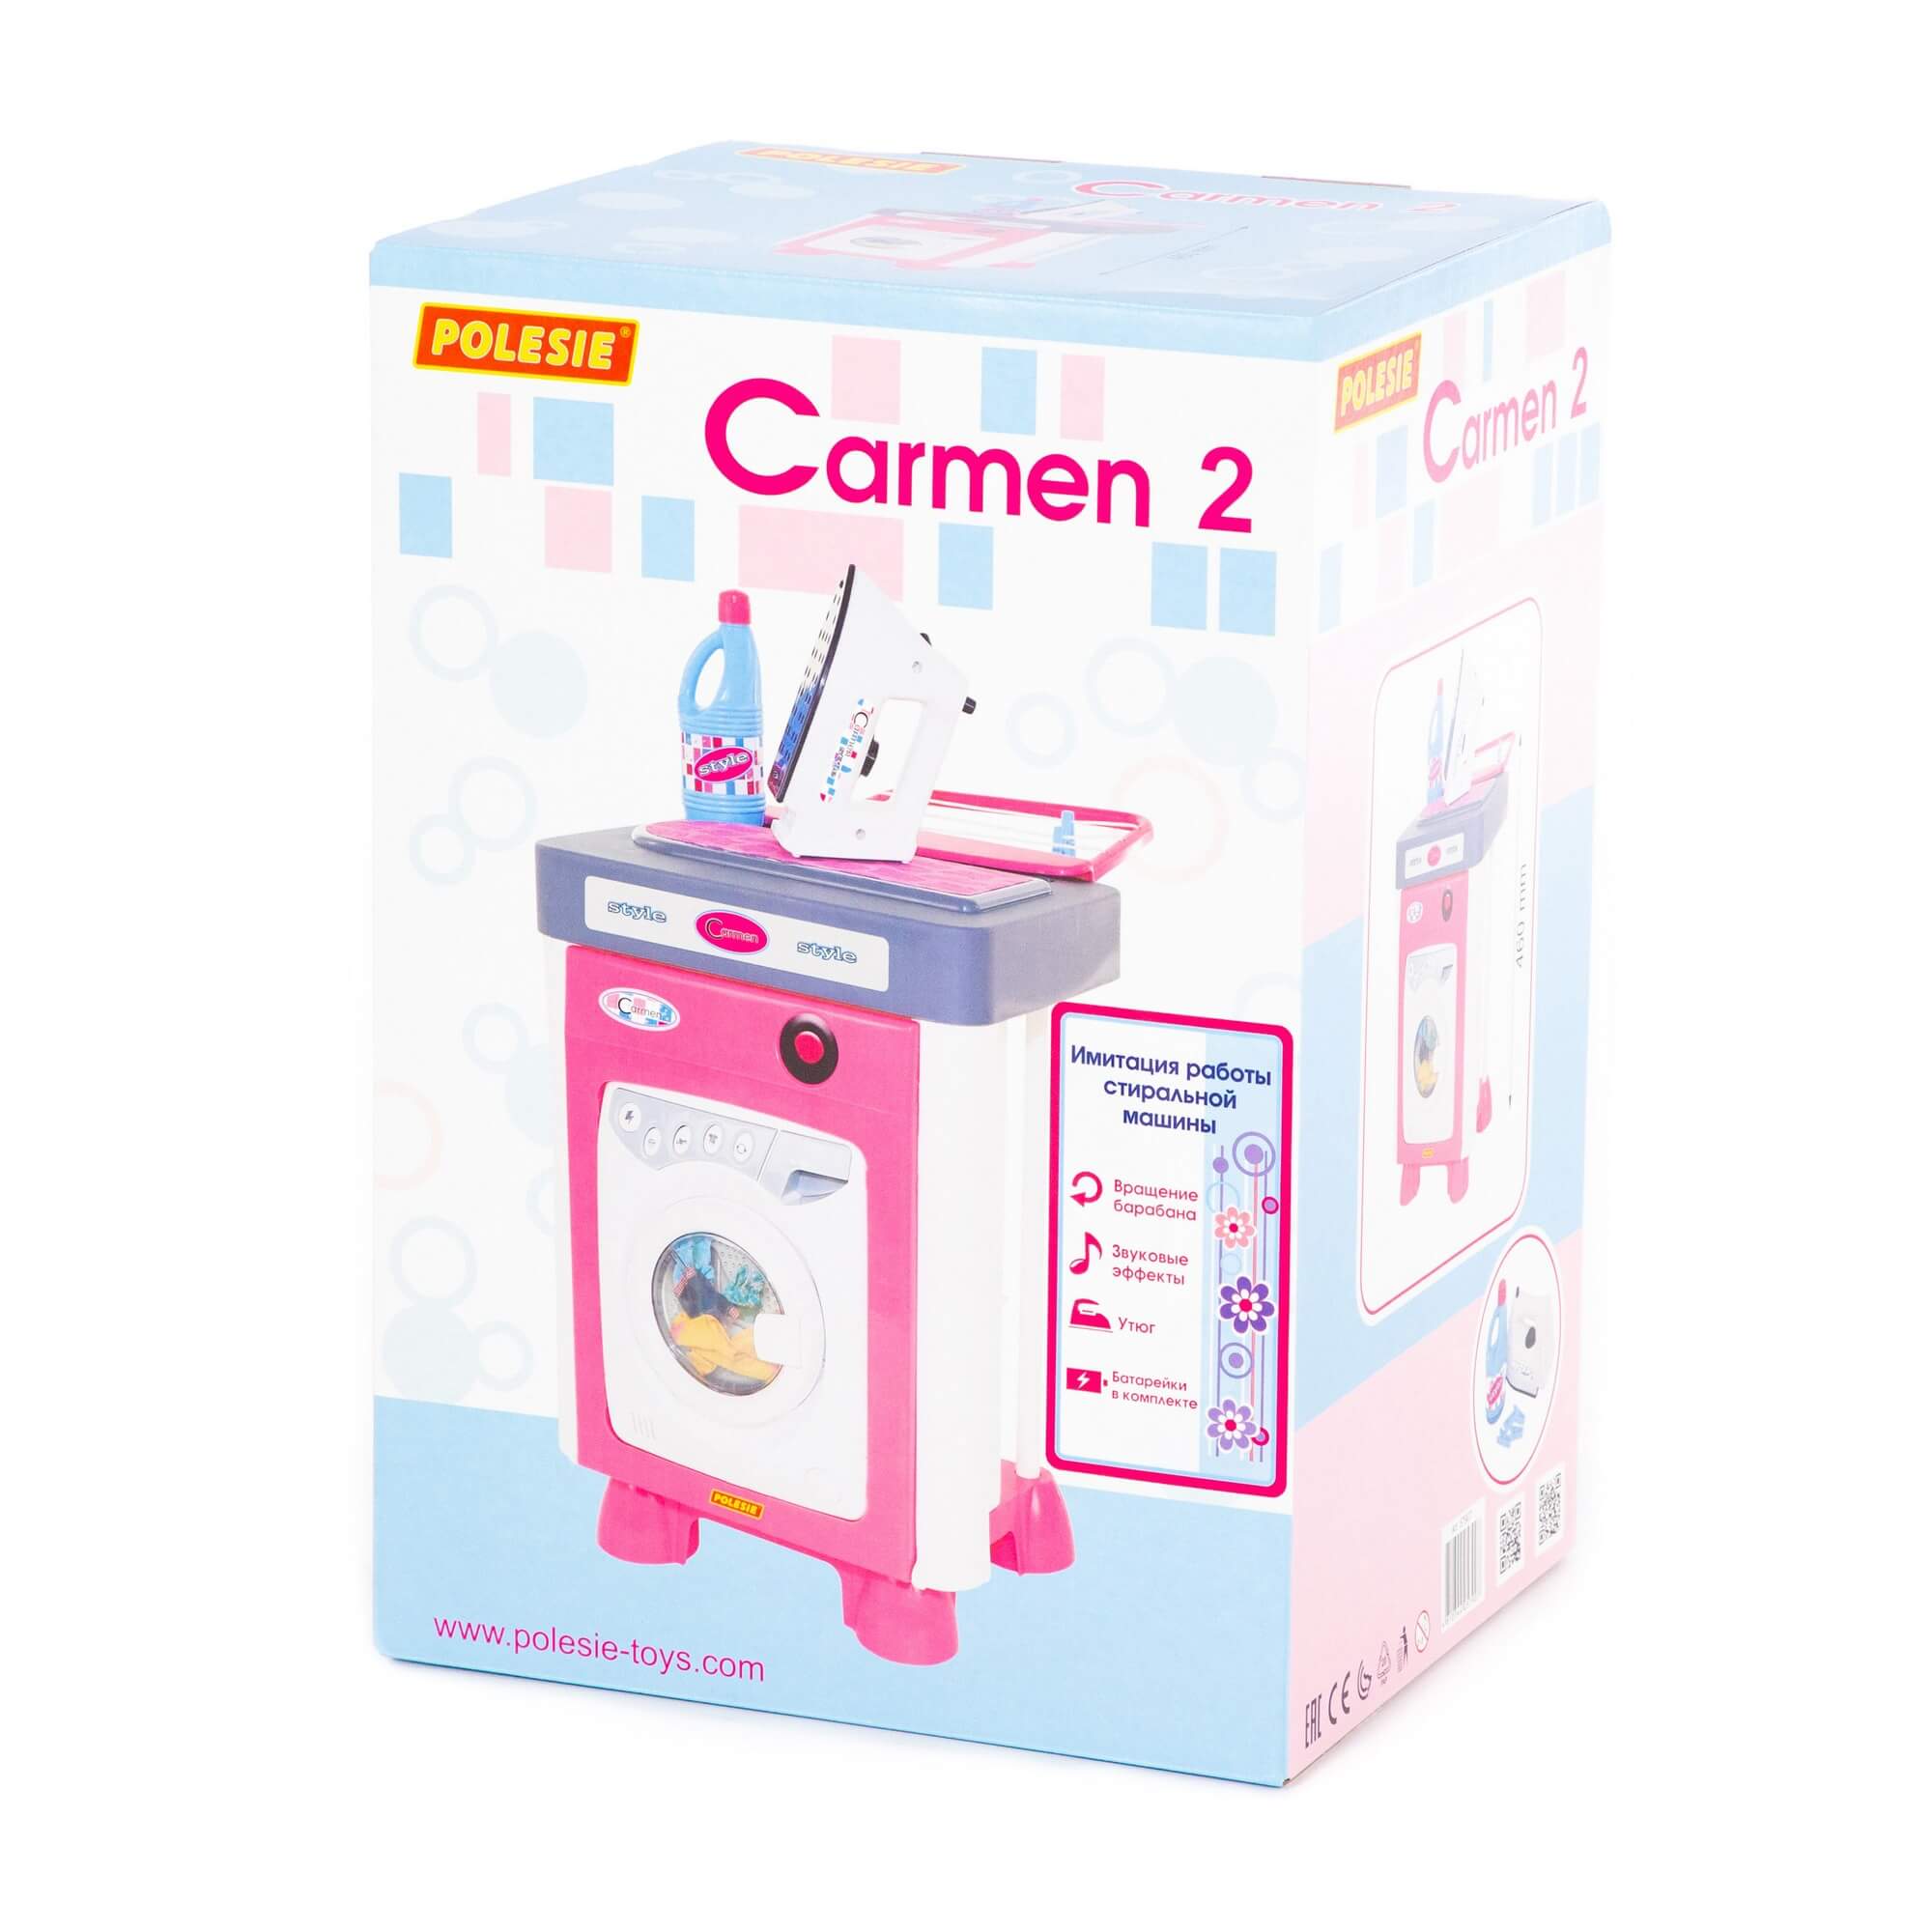 Набор Carmen №2 со стиральной машиной (в коробке)